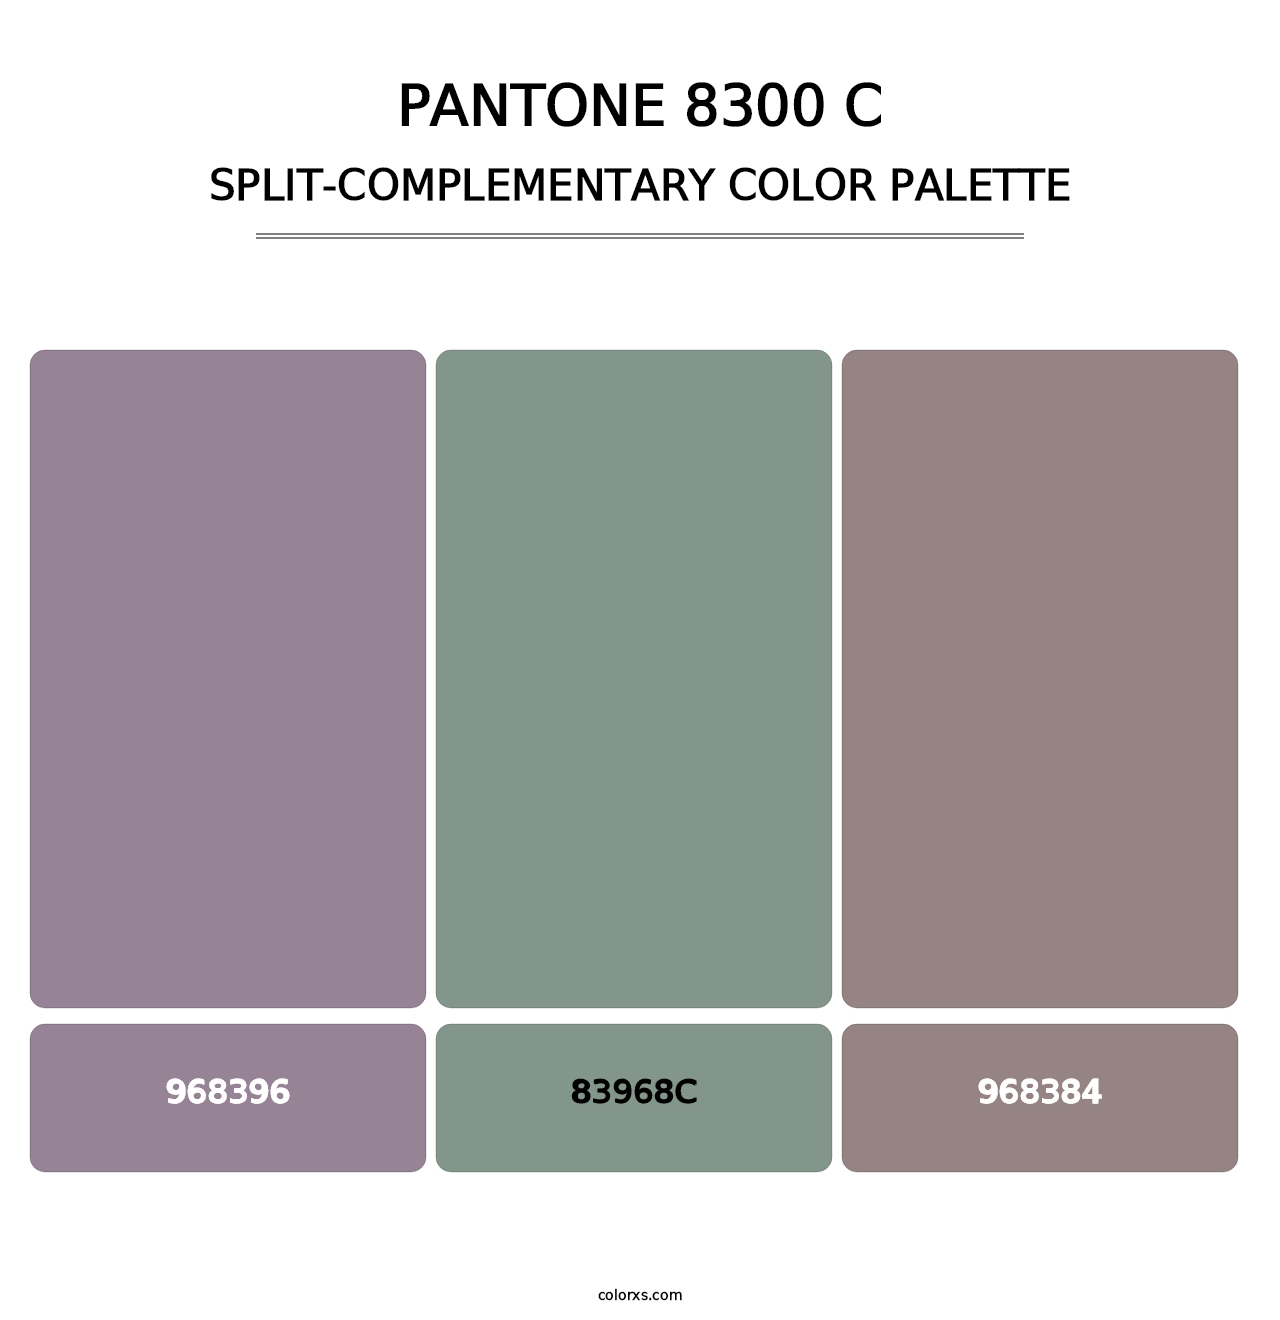 PANTONE 8300 C - Split-Complementary Color Palette